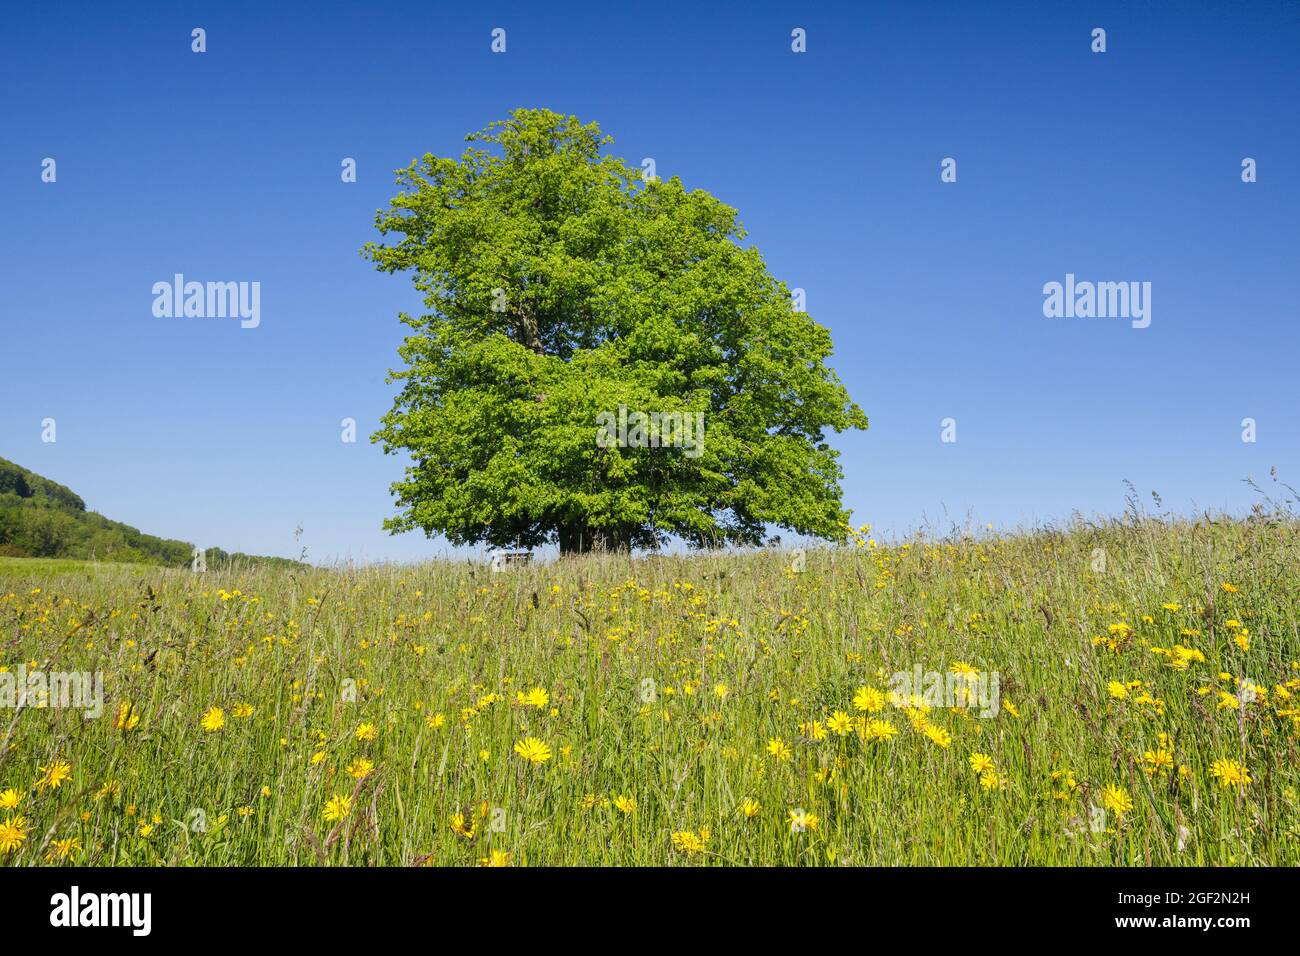 Limo de hoja grande, árbol de lima (Tilia platyphyllos), árbol de tilo de Linn, gran árbol de tilo antiguo que se encuentra bajo un cielo azul en un prado floreciente, Foto de stock